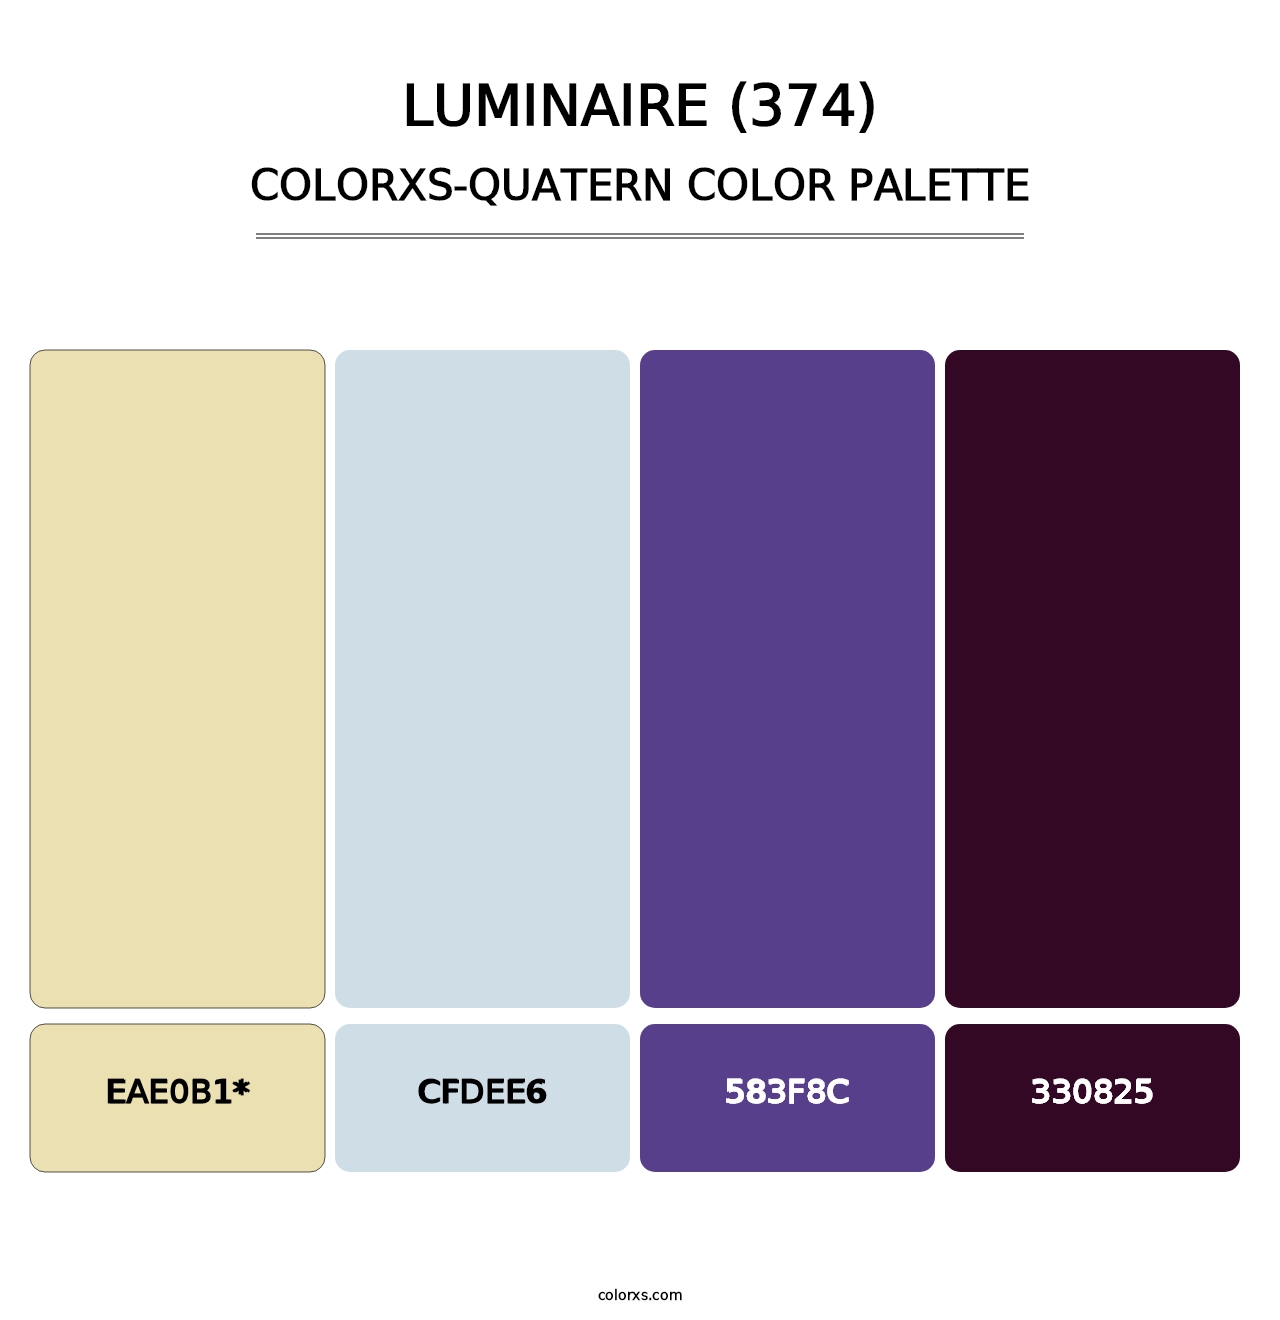 Luminaire (374) - Colorxs Quatern Palette